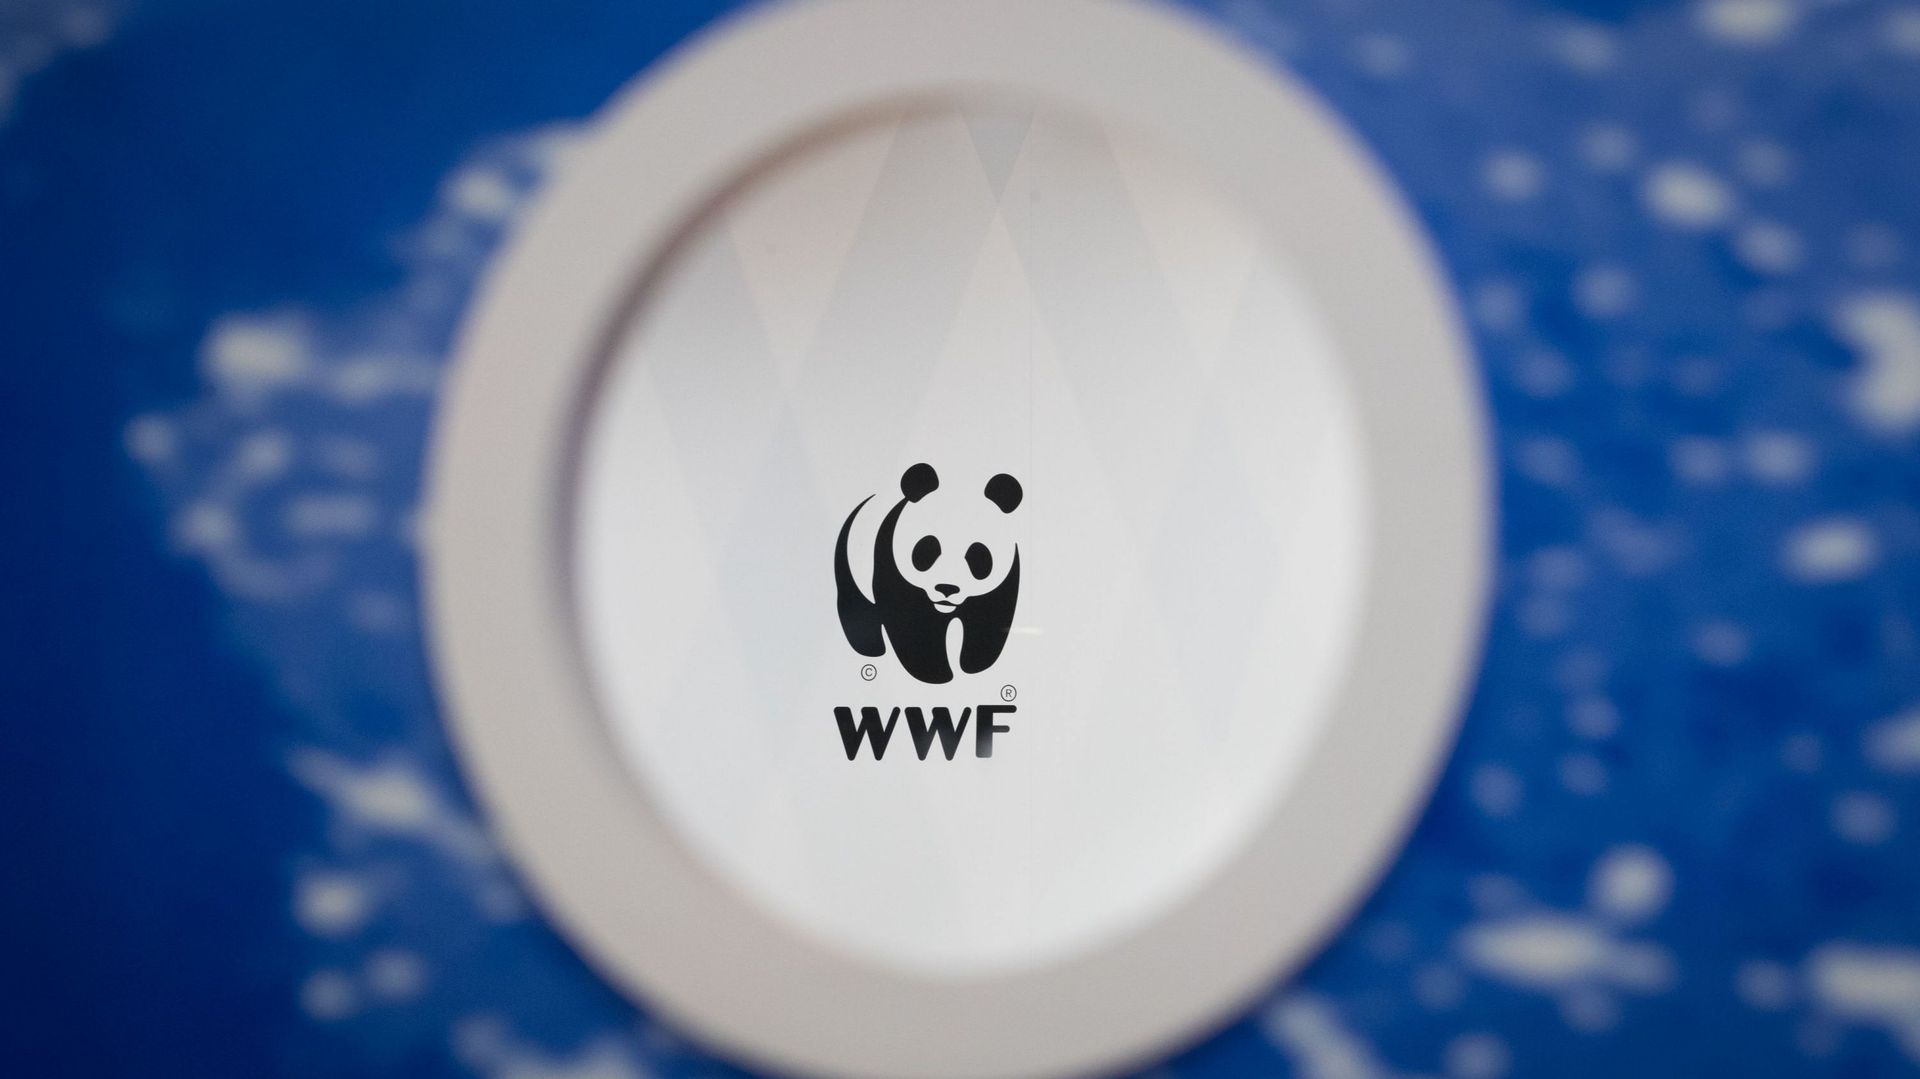 Le WWF compte plus de cinq millions de membres, donateurs et donatrices, au sein d'un réseau mondial actif dans une centaine de pays.